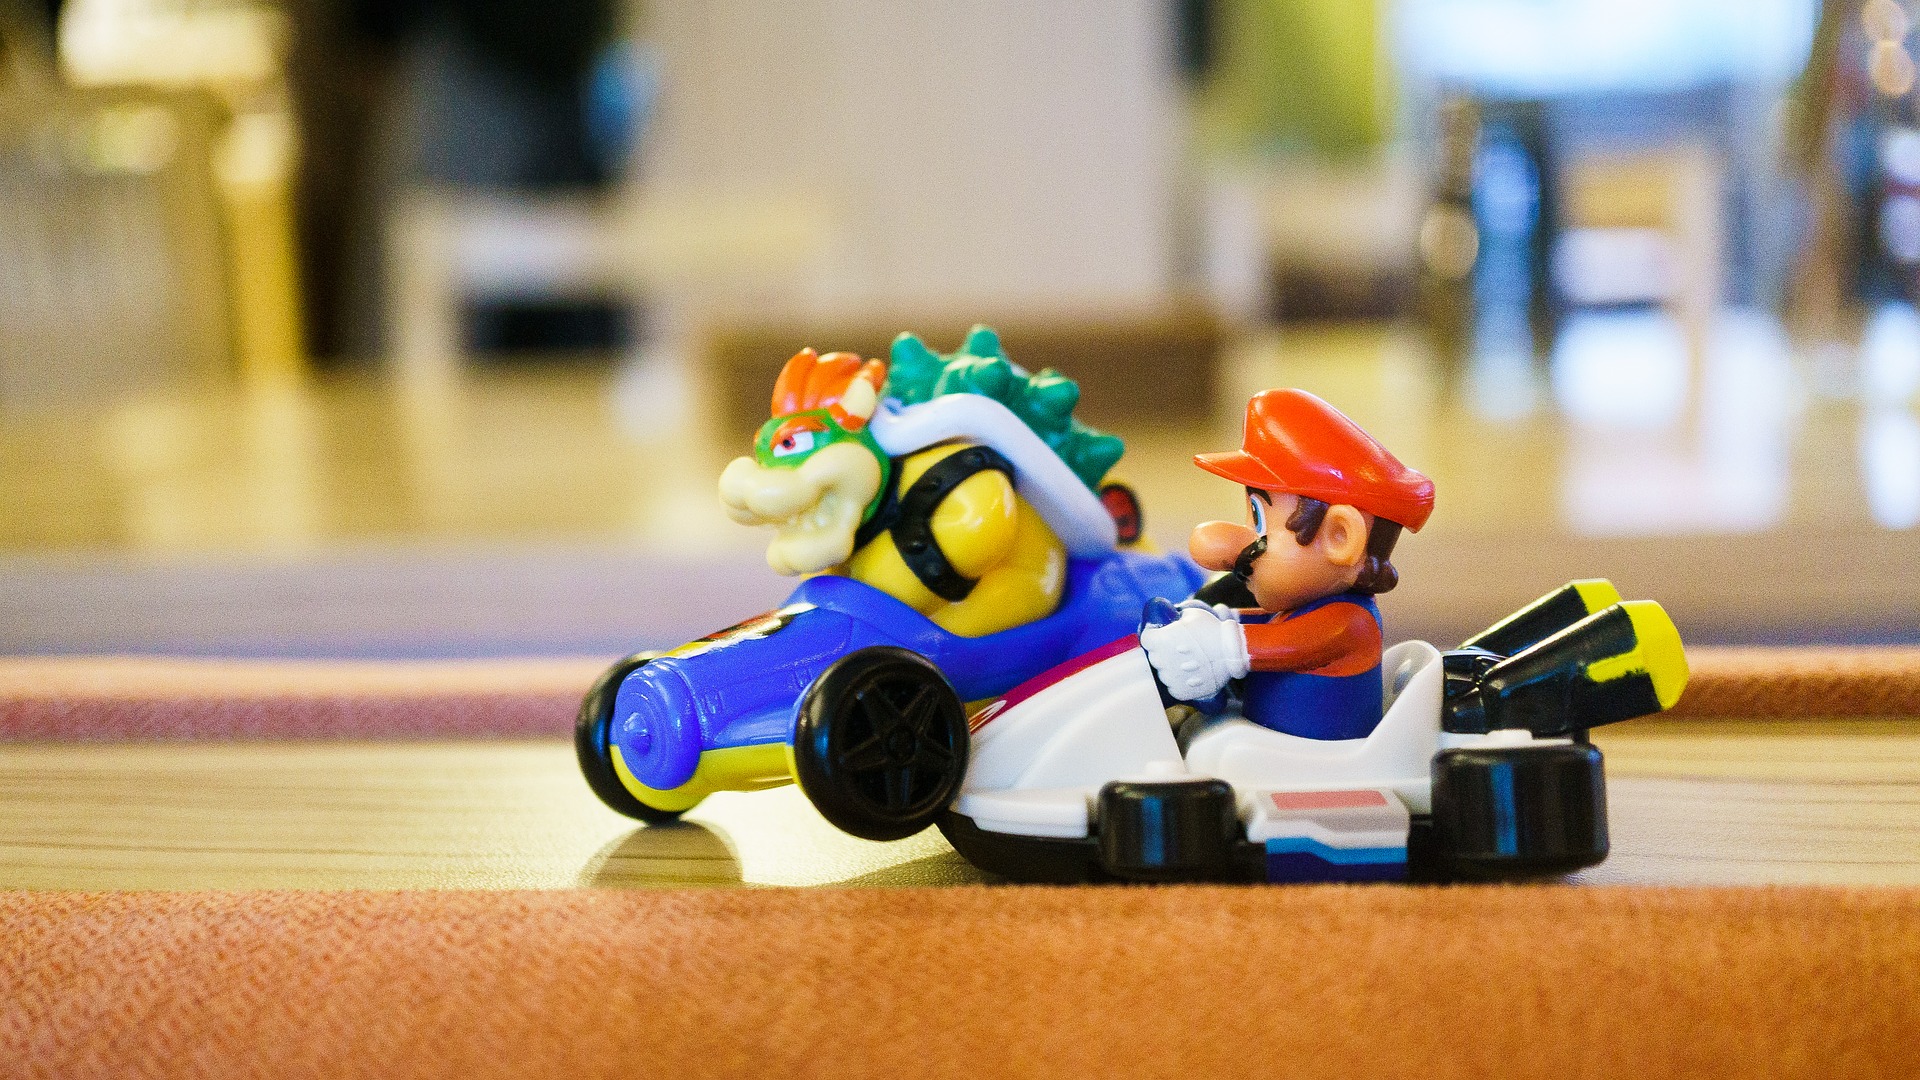 Spielzeugautounfall. Bei Mario Kart sind Mario und Bowser kollidiert.